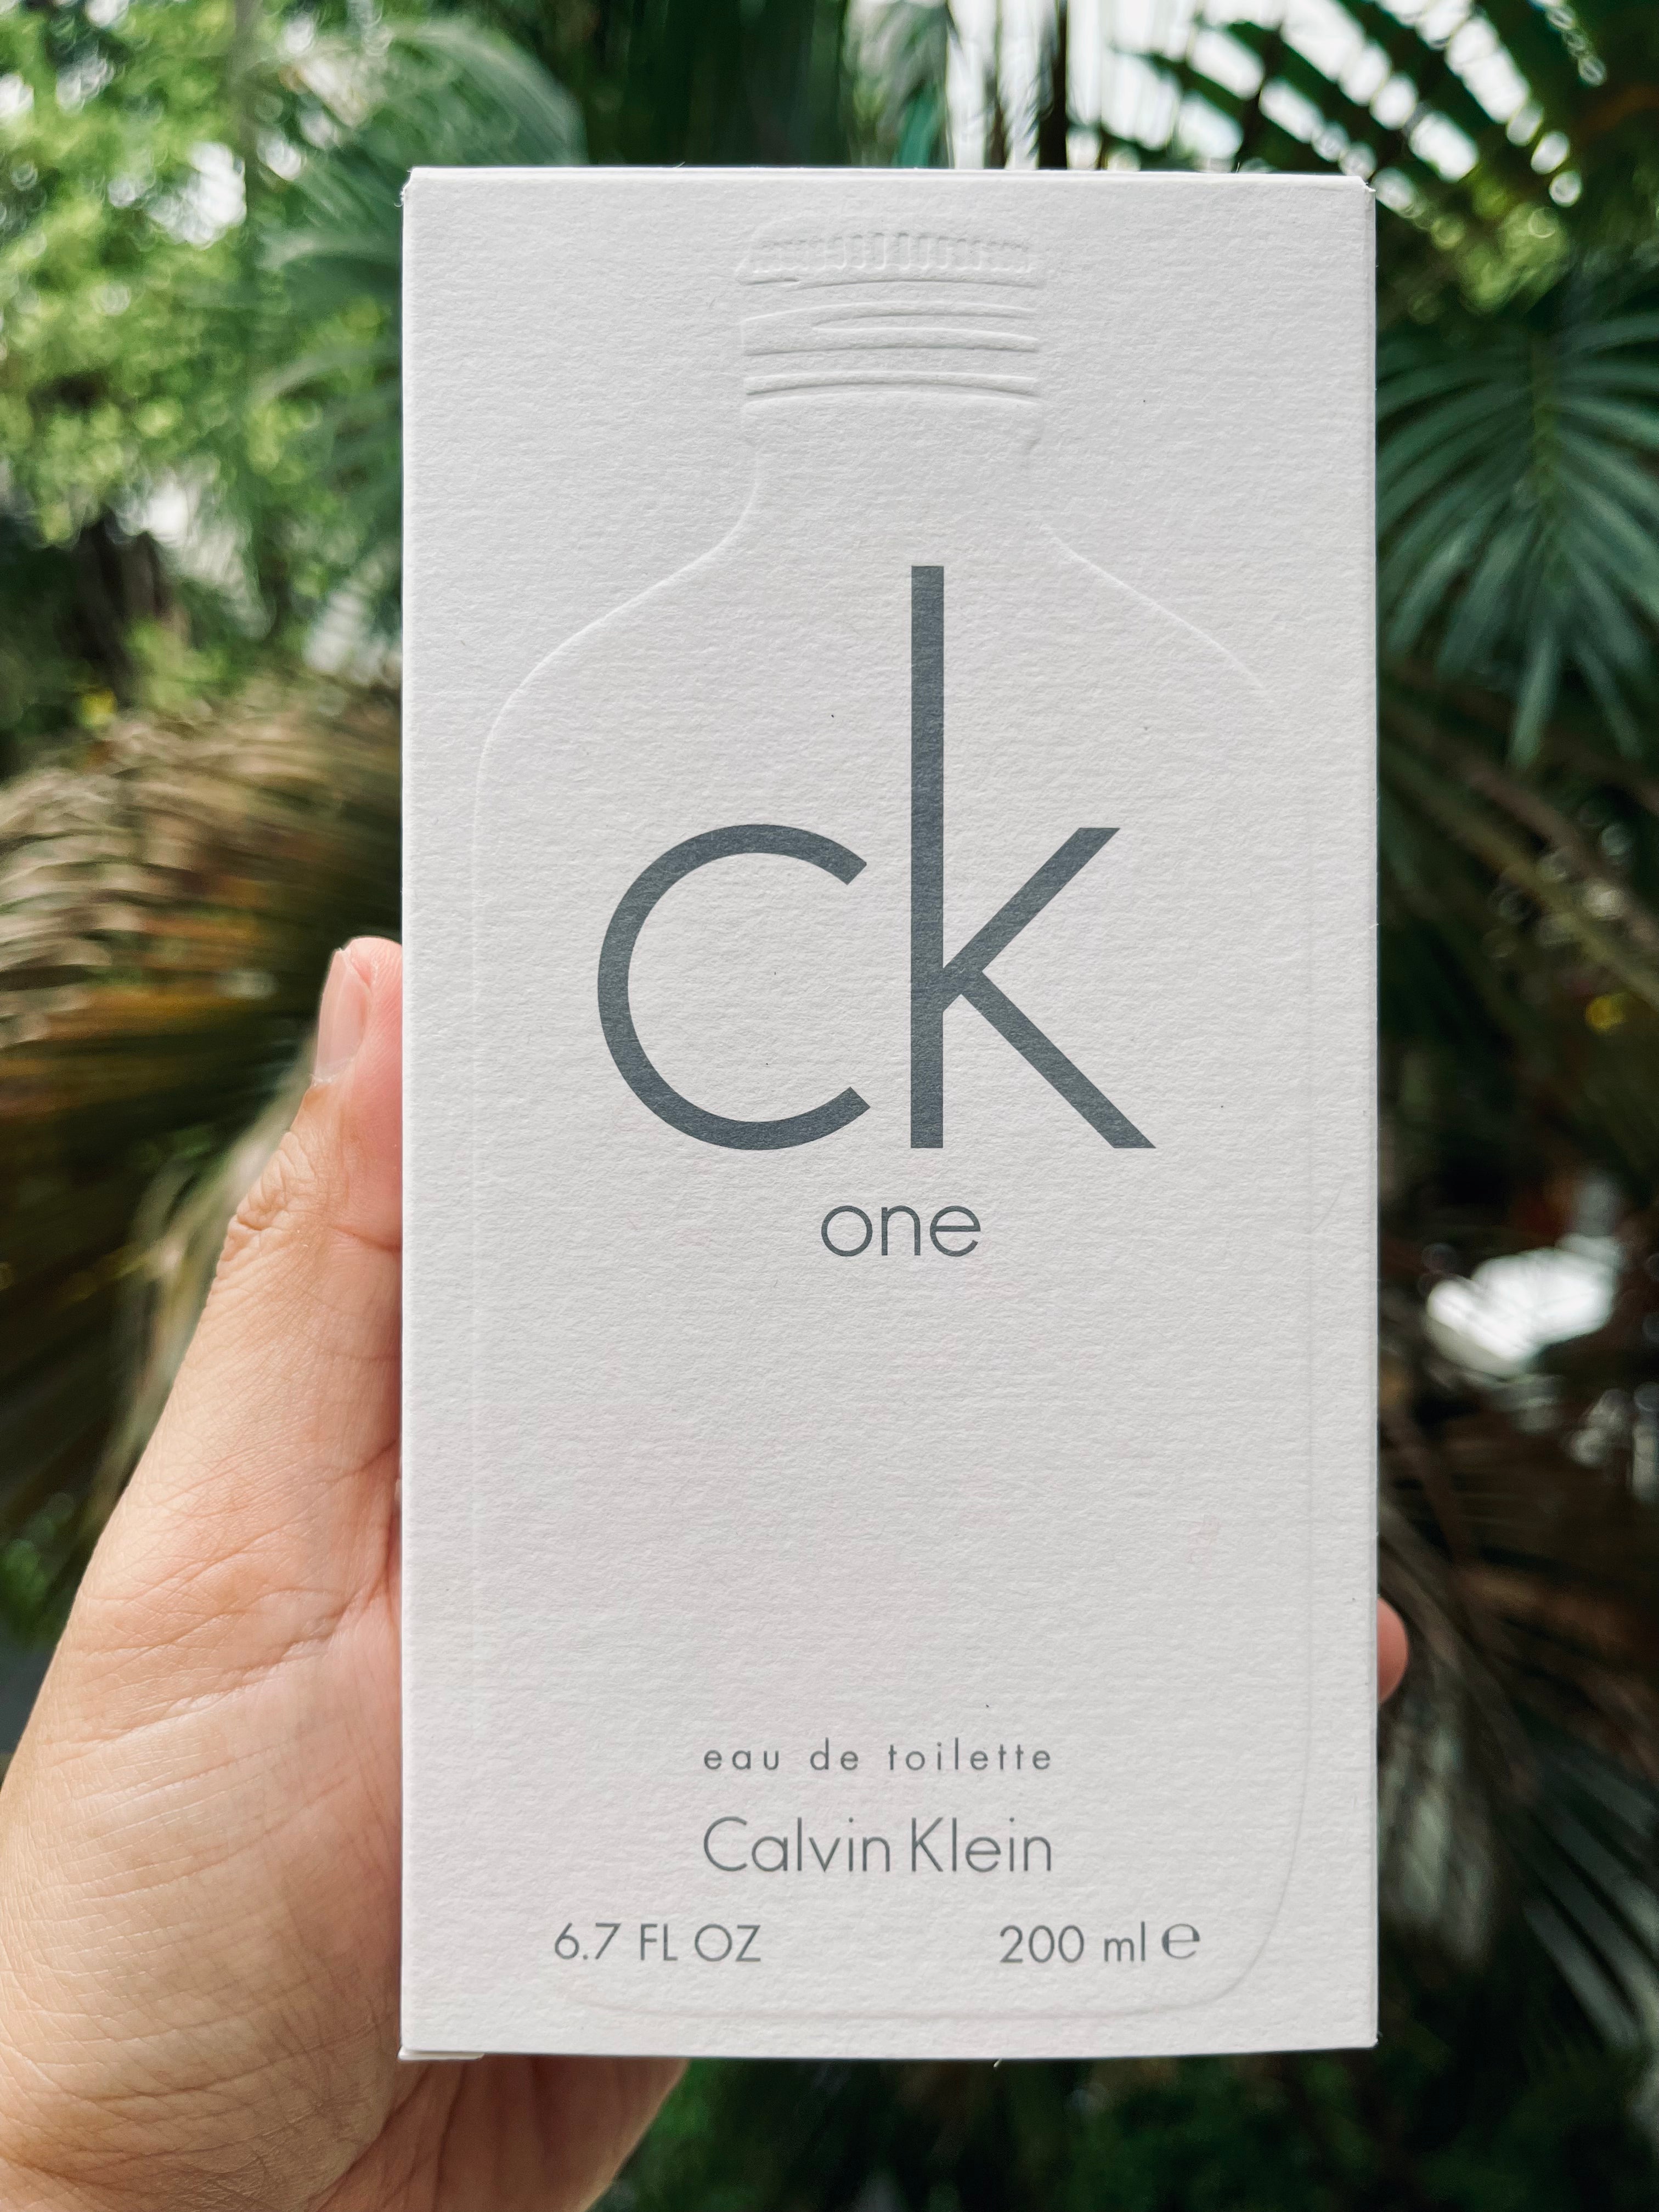 Calvin Klein CK be Fragrance Review